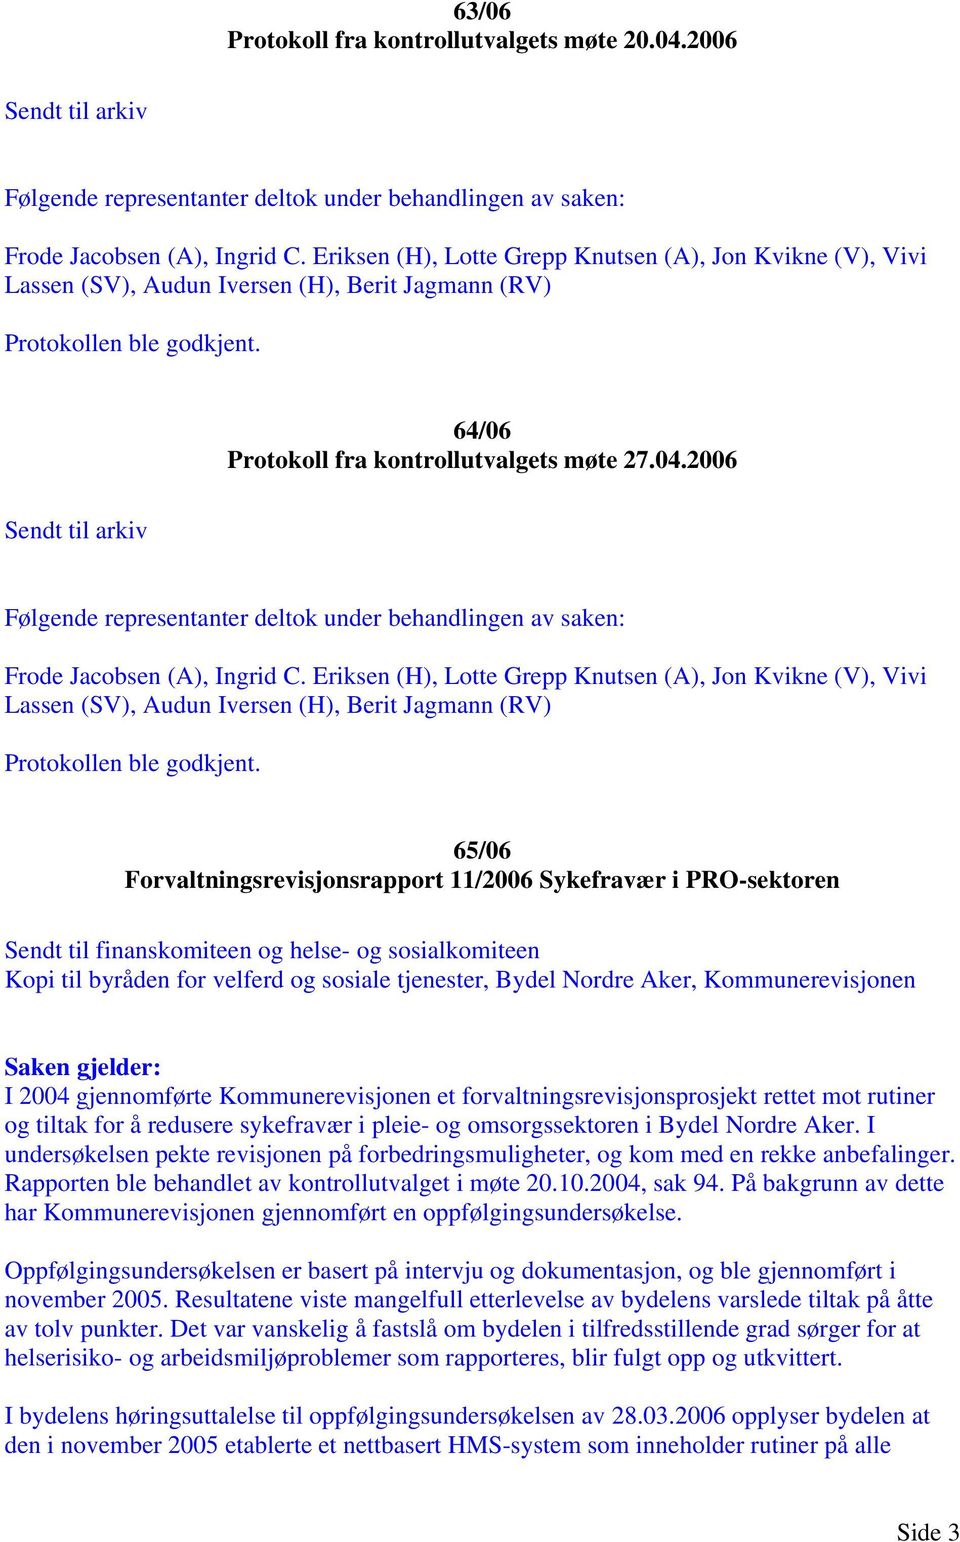 2006 Sendt til arkiv Frode Jacobsen (A), Ingrid C. Eriksen (H), Lotte Grepp Knutsen (A), Jon Kvikne (V), Vivi Lassen (SV), Audun Iversen (H), Berit Jagmann (RV) Protokollen ble godkjent.